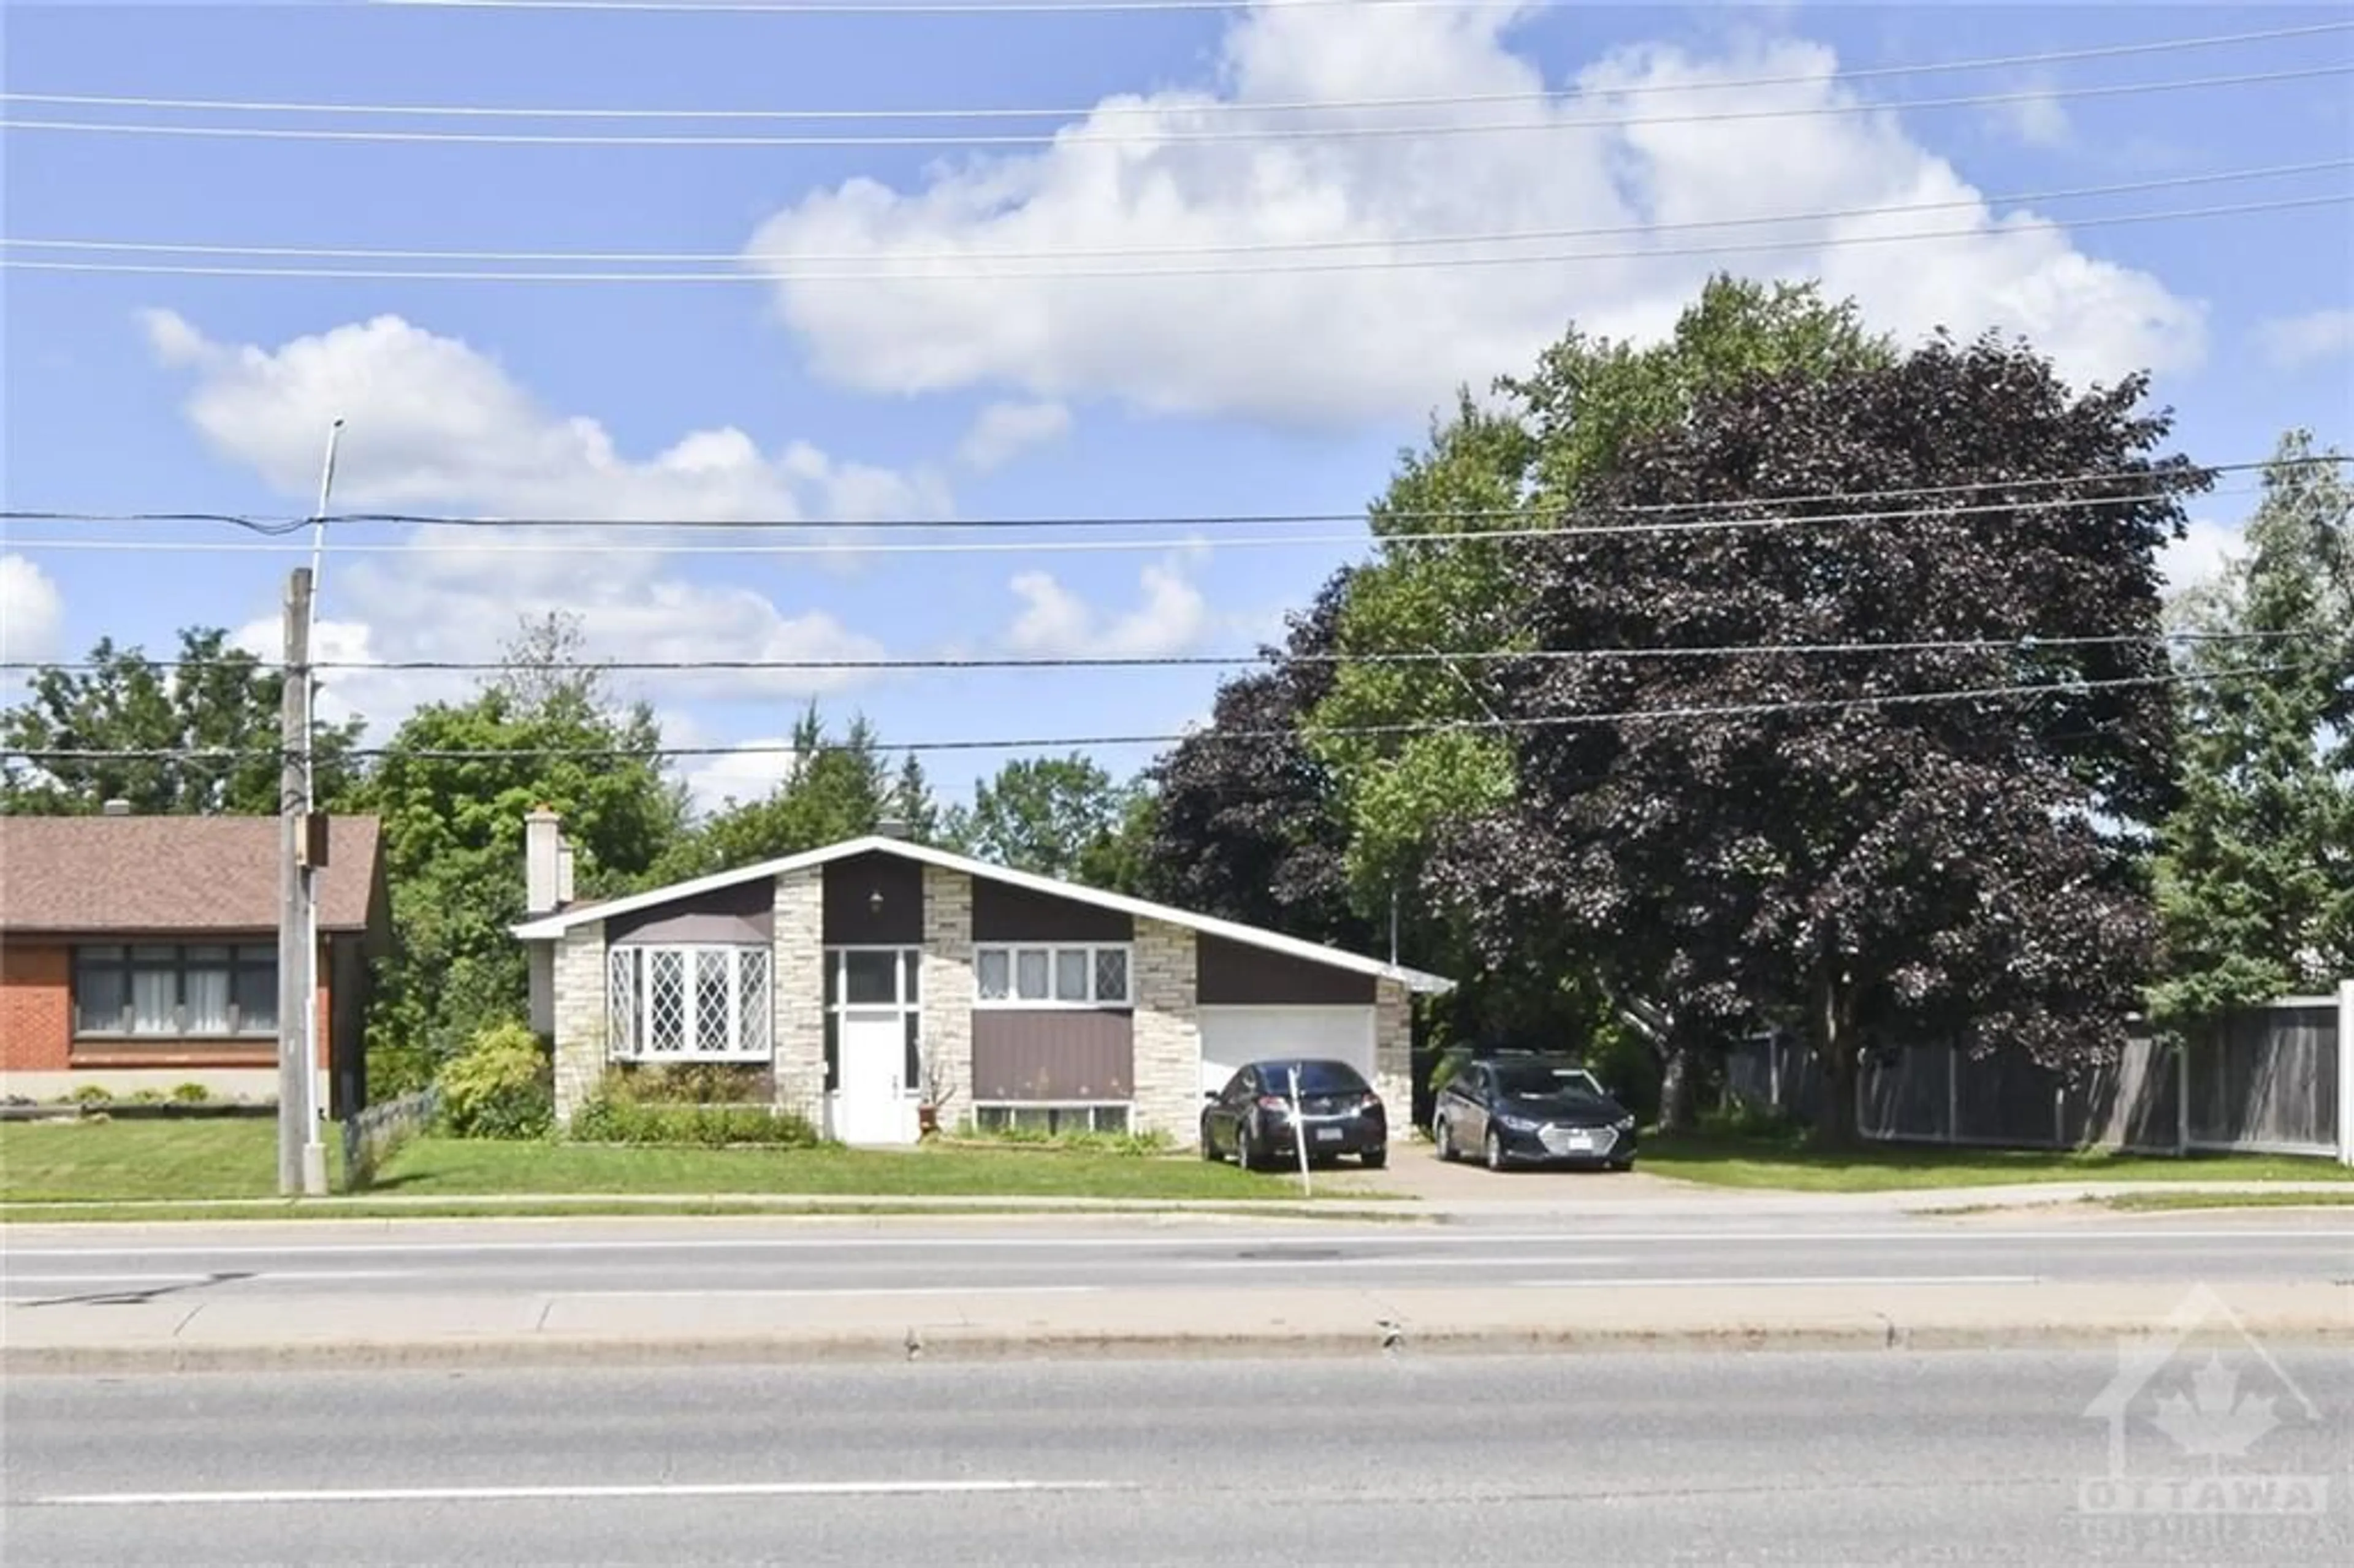 Street view for 4347 INNES Rd, Ottawa Ontario K1C 1T1